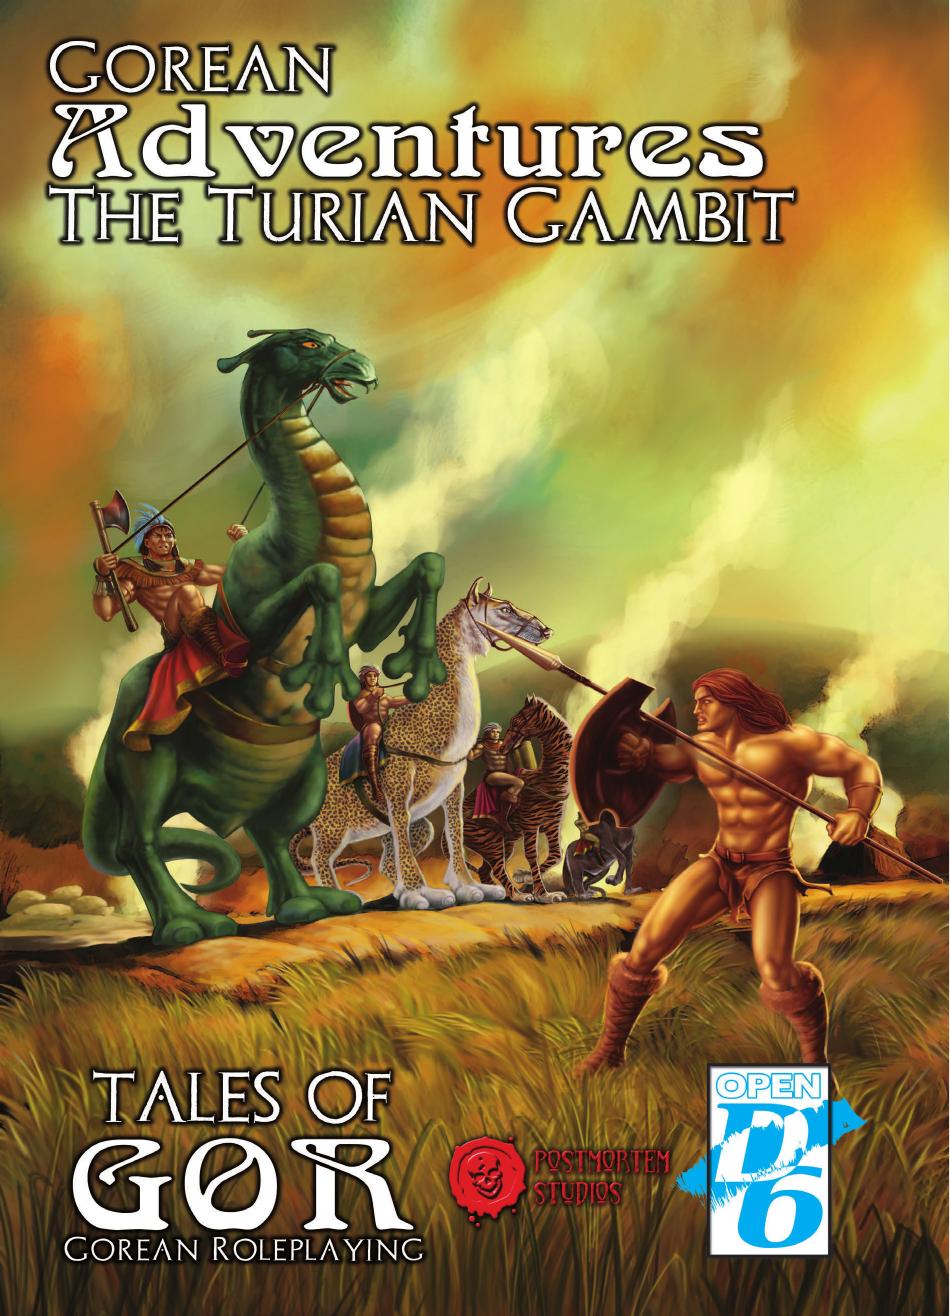 Gorean Adventures 03 The Turian Gambit